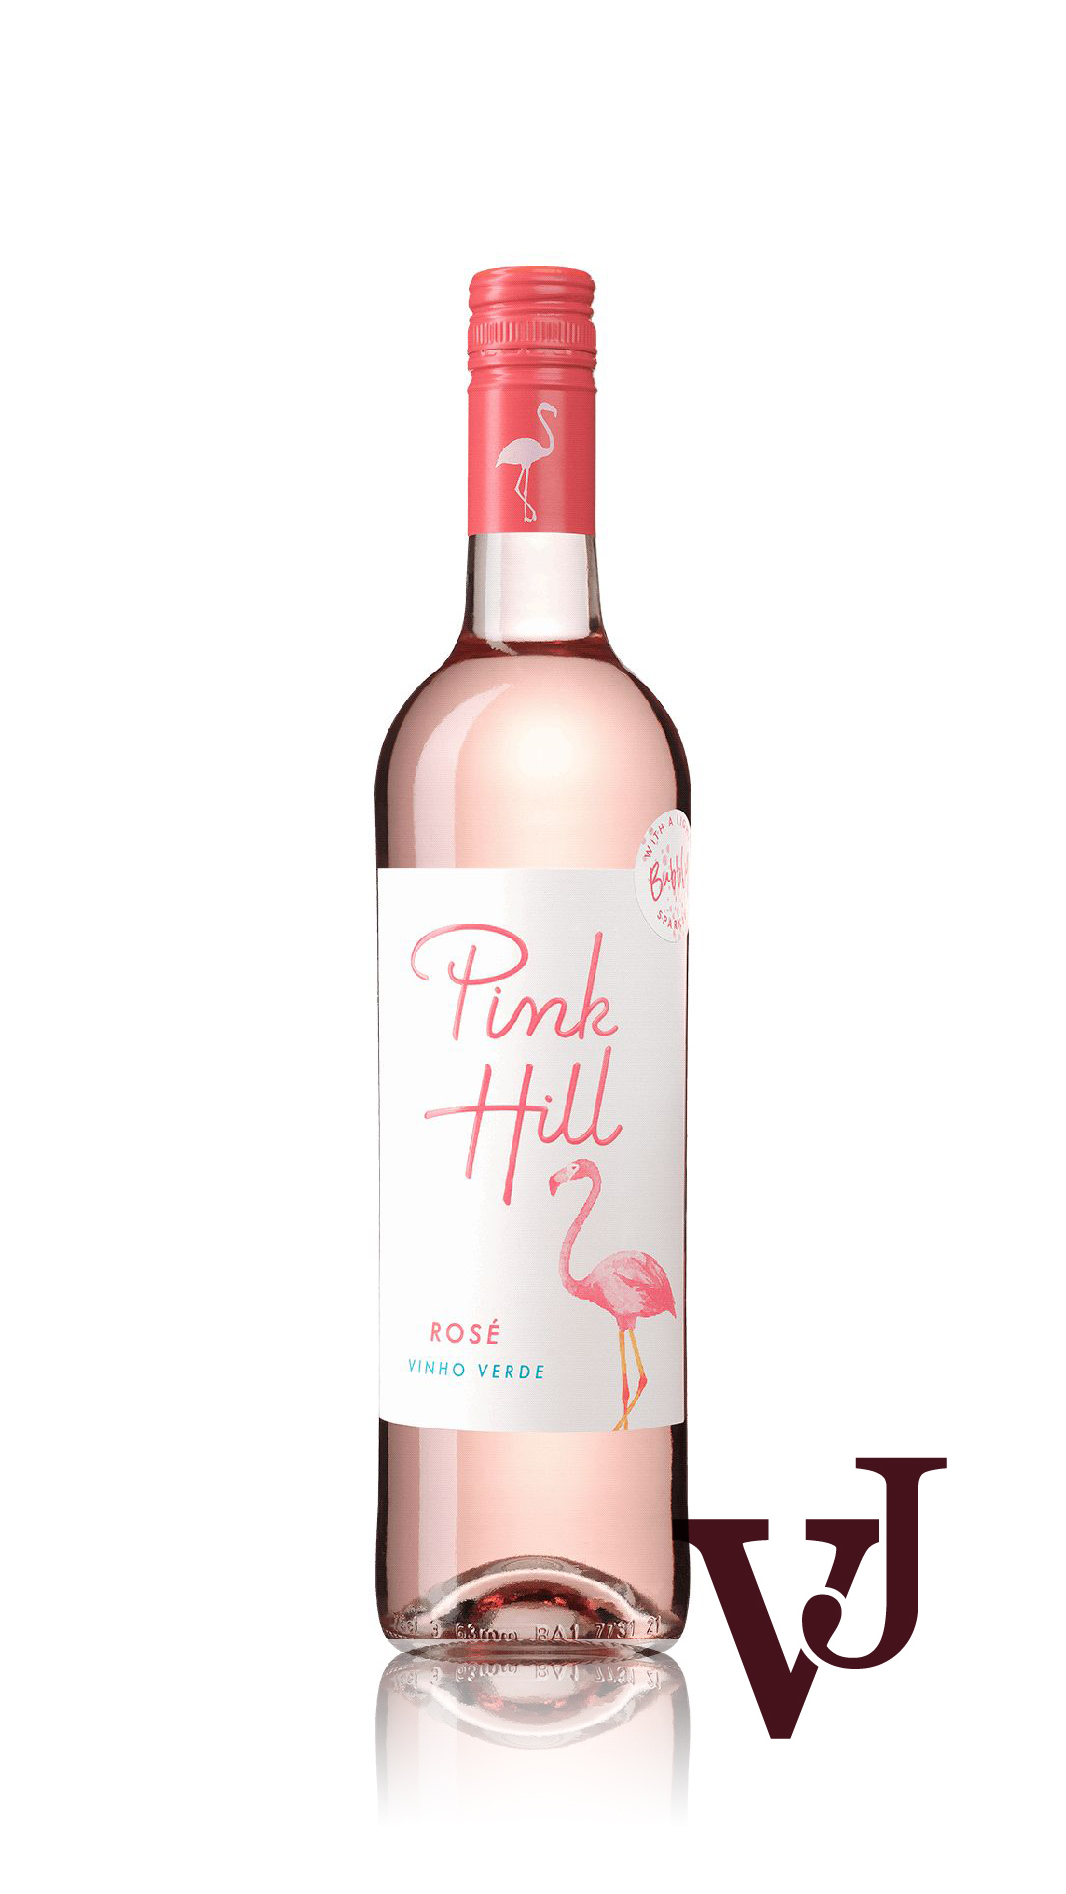 Rosé Vin - Pink Hill Rosé artikel nummer 208201 från producenten Forever Wine från området Portugal - Vinjournalen.se